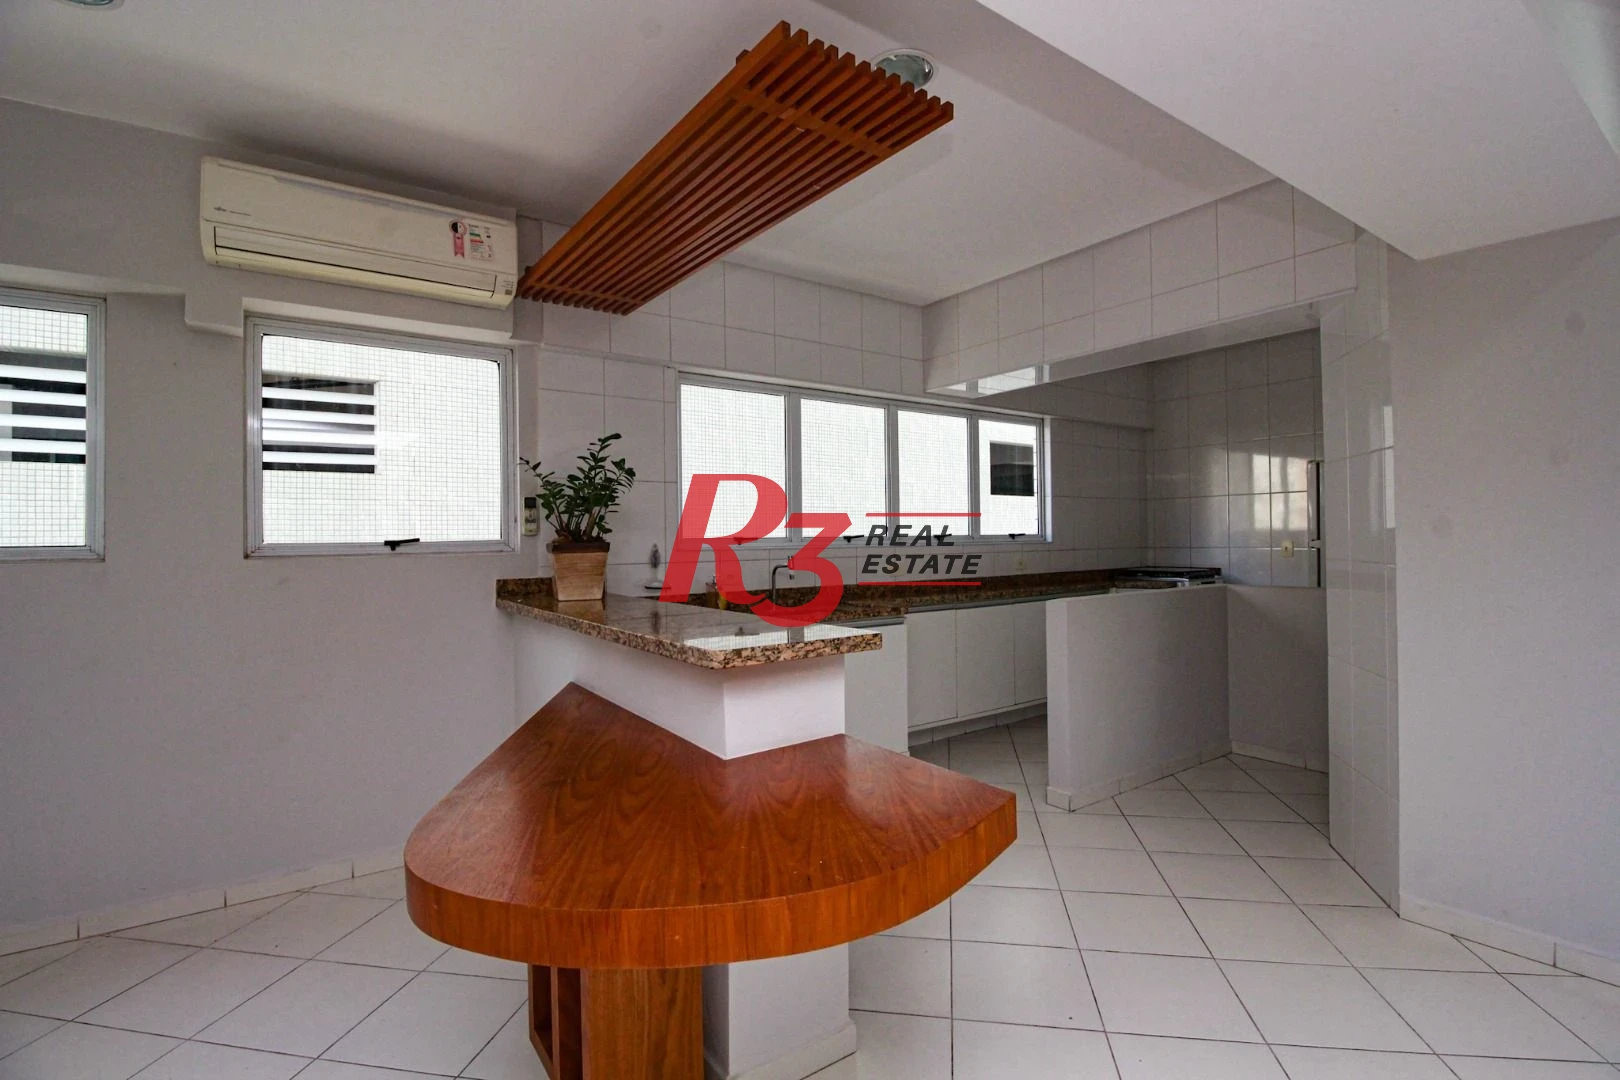 Apartamento Garden com 3 dormitórios à venda, 140 m² por R$ 1.595.000,00 - Pompéia - Santos/SP